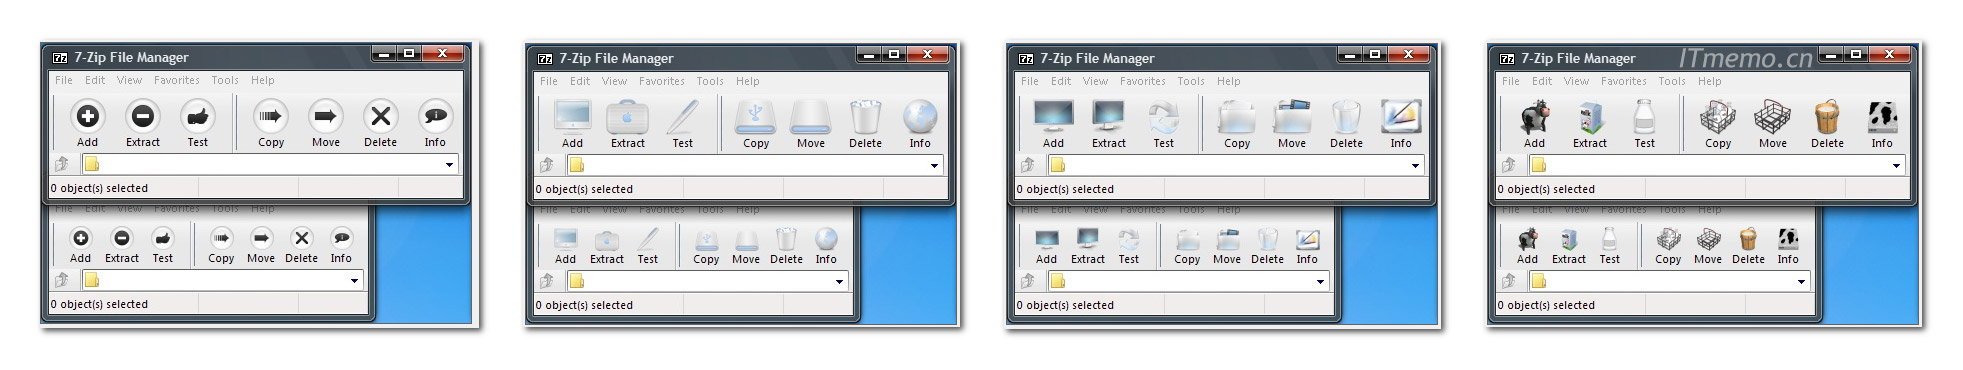 在7-Zip Theme Manager中，你将看到一个主题列表，其中包含各种可用的主题选项2